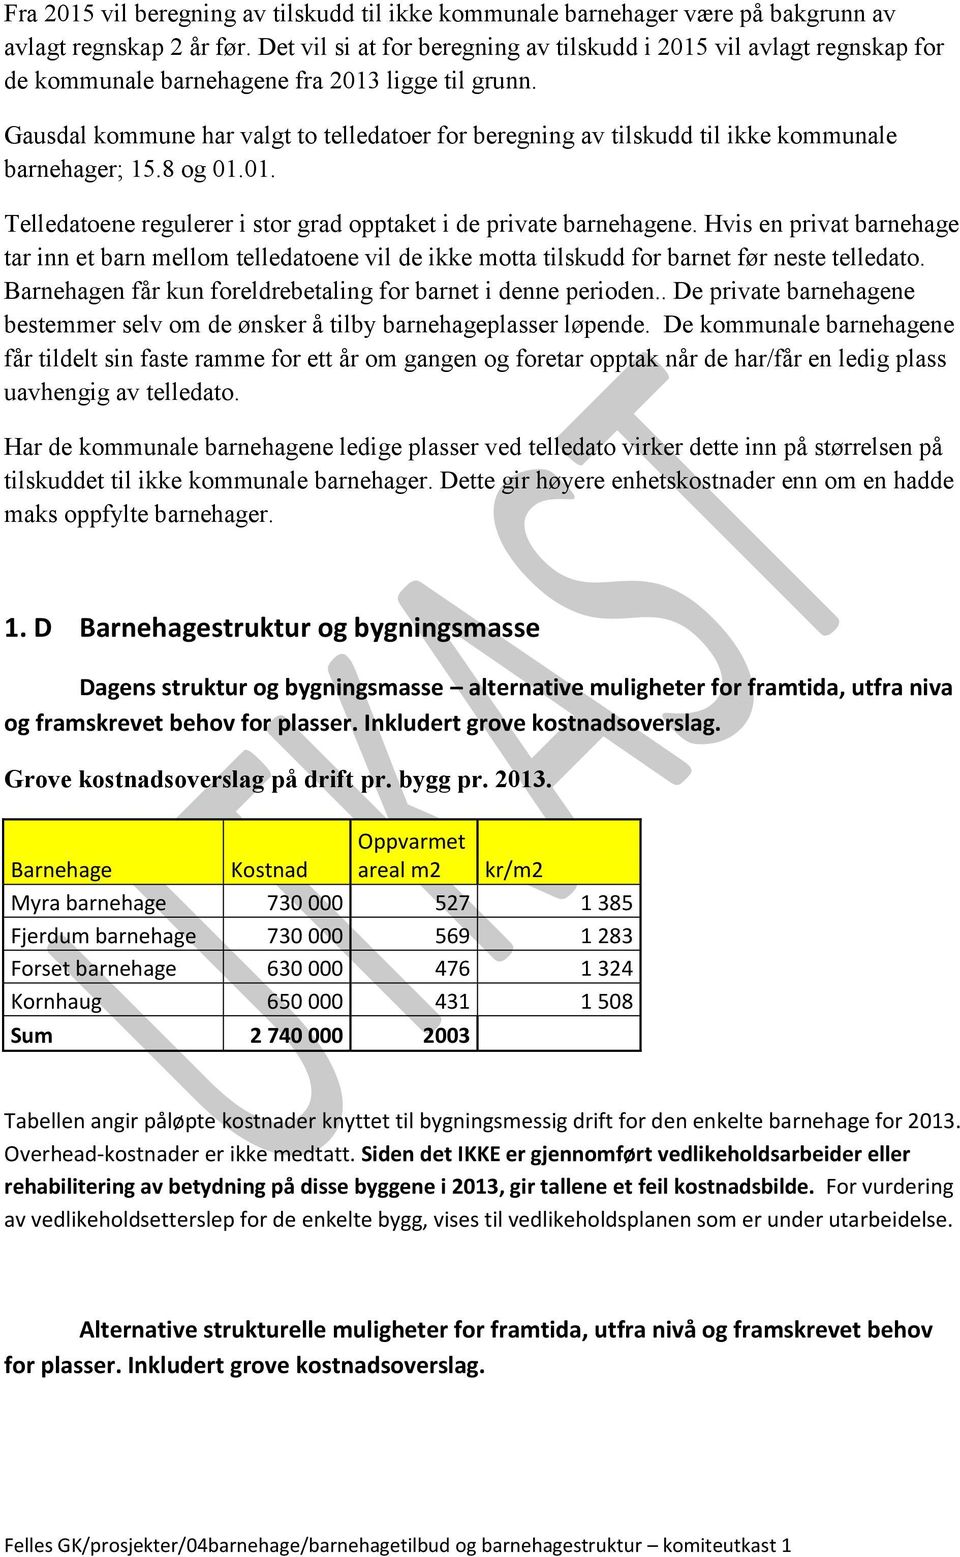 Gausdal kommune har valgt to telledatoer for beregning av tilskudd til kommunale barnehager; 15.8 og 01.01. Telledatoene regulerer i stor grad opptaket i de private barnehagene.